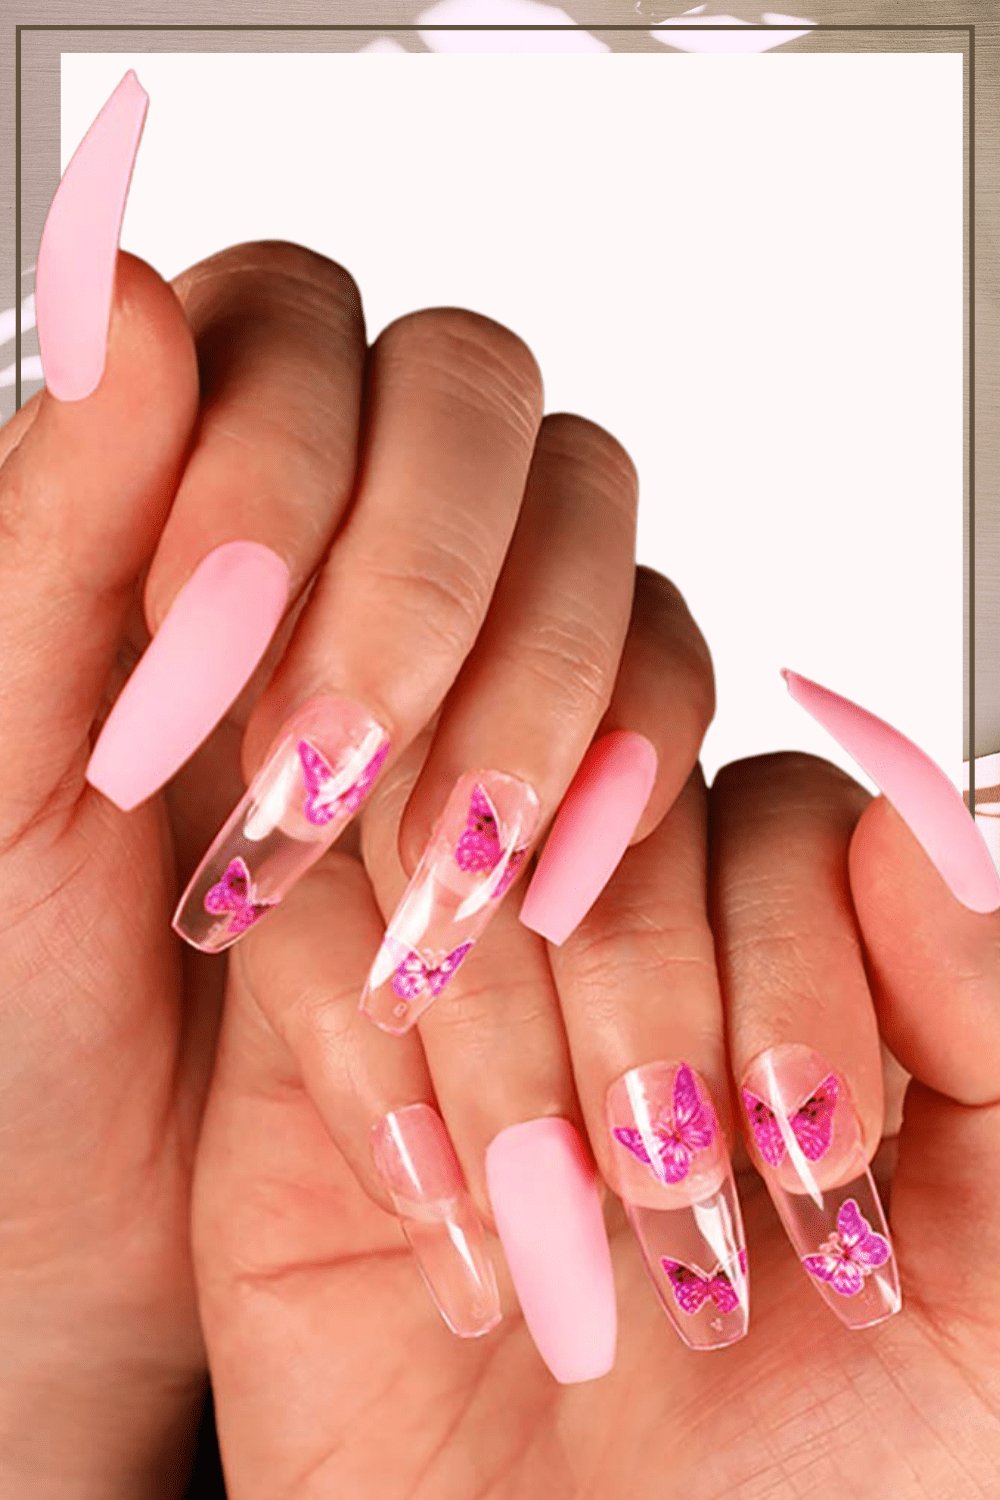 Hot pink nails with rhinestones | Rhinestone nails, Nails, Pink nails